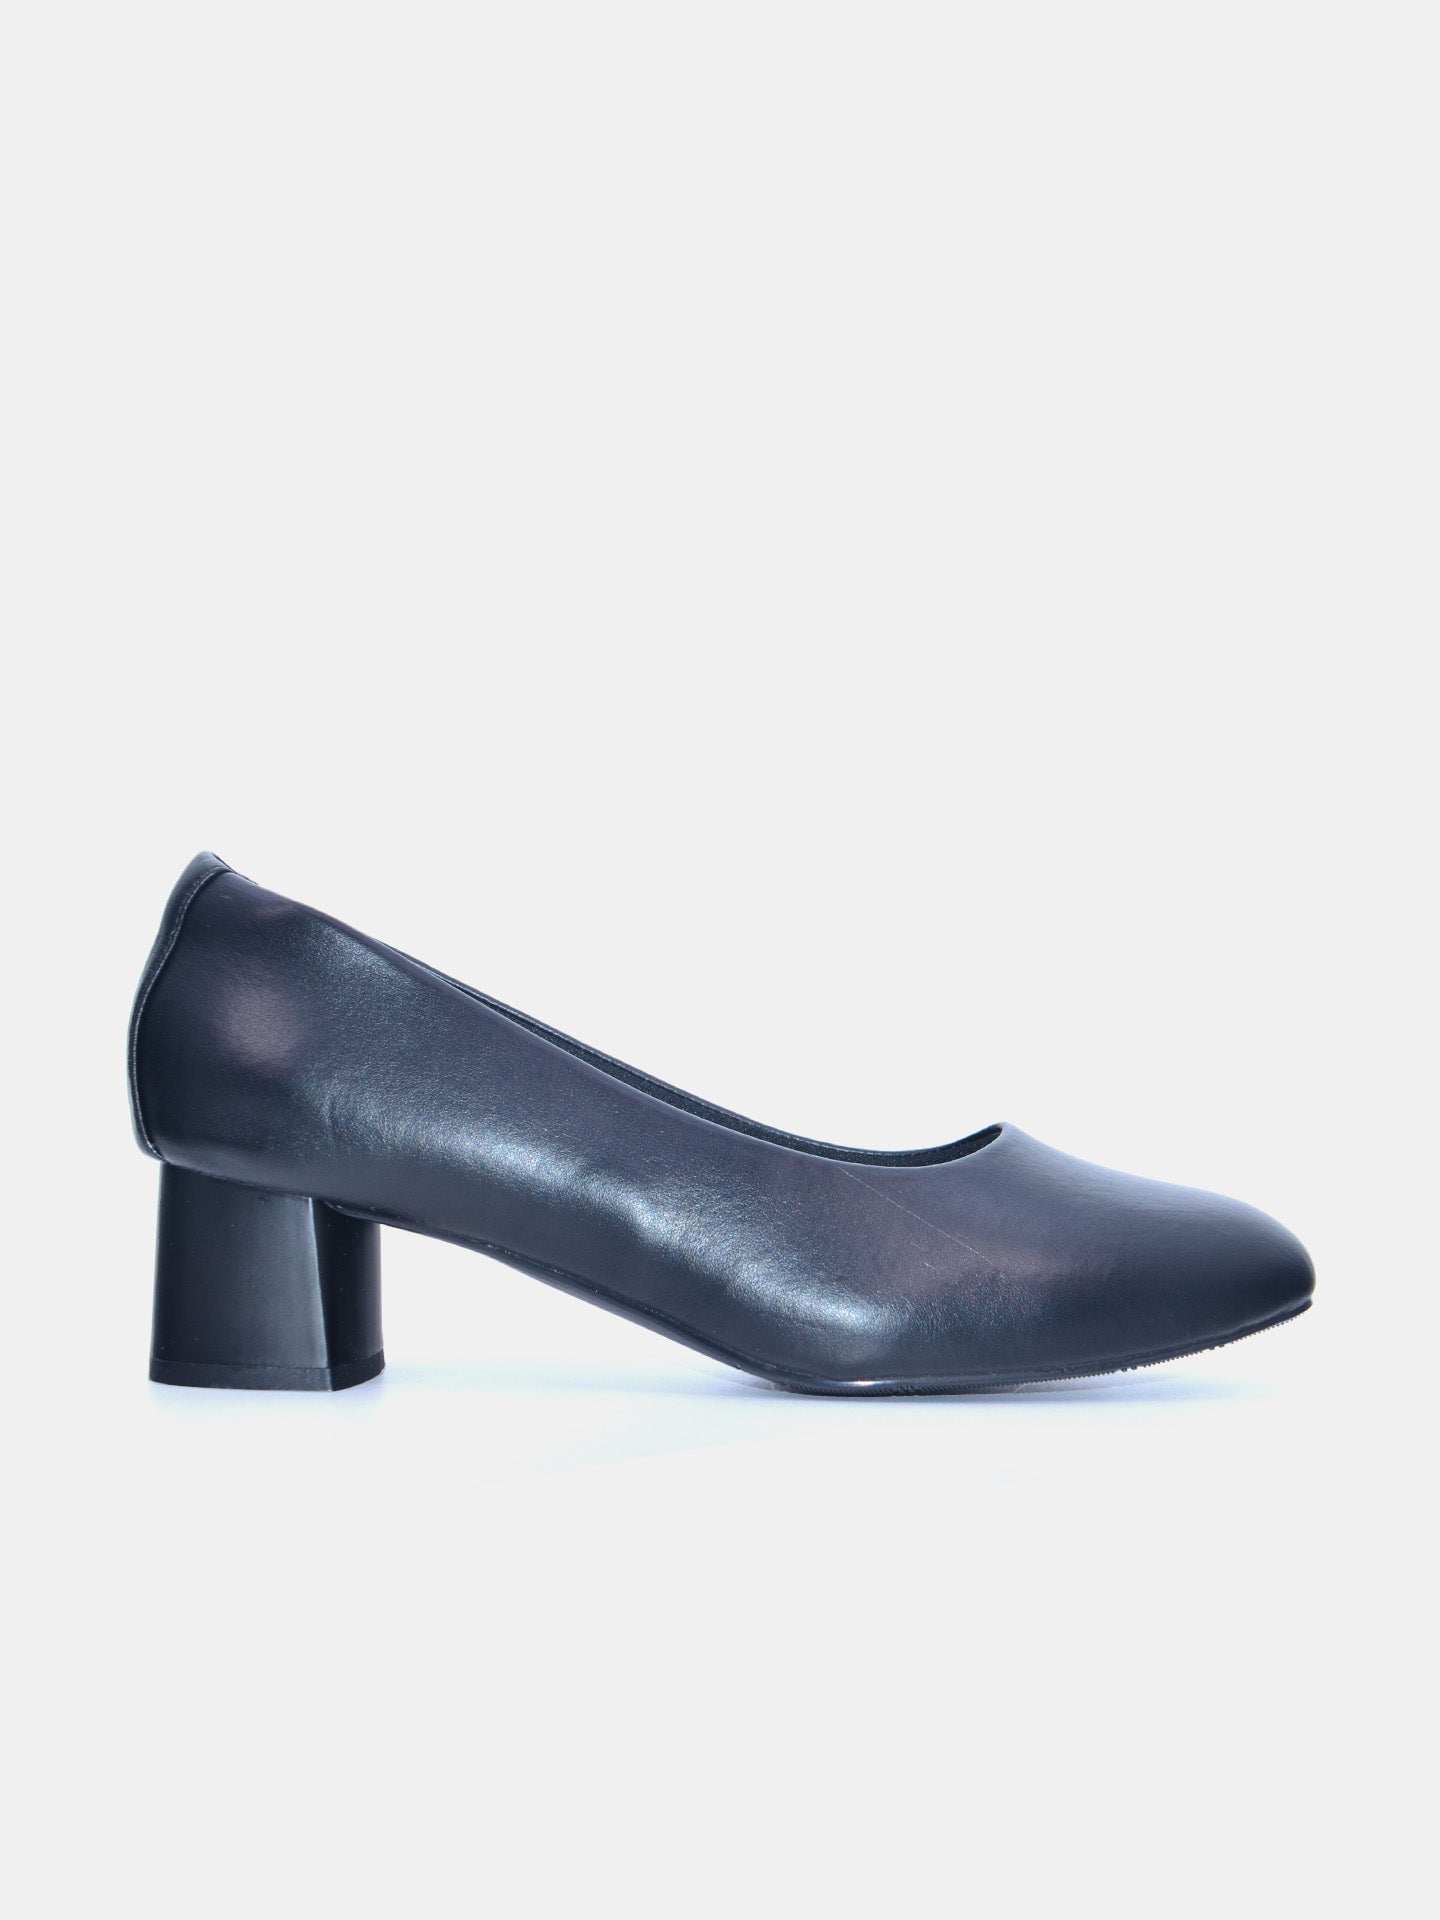 Michelle Morgan 219JT507 Women's Heeled Sandals #color_Black